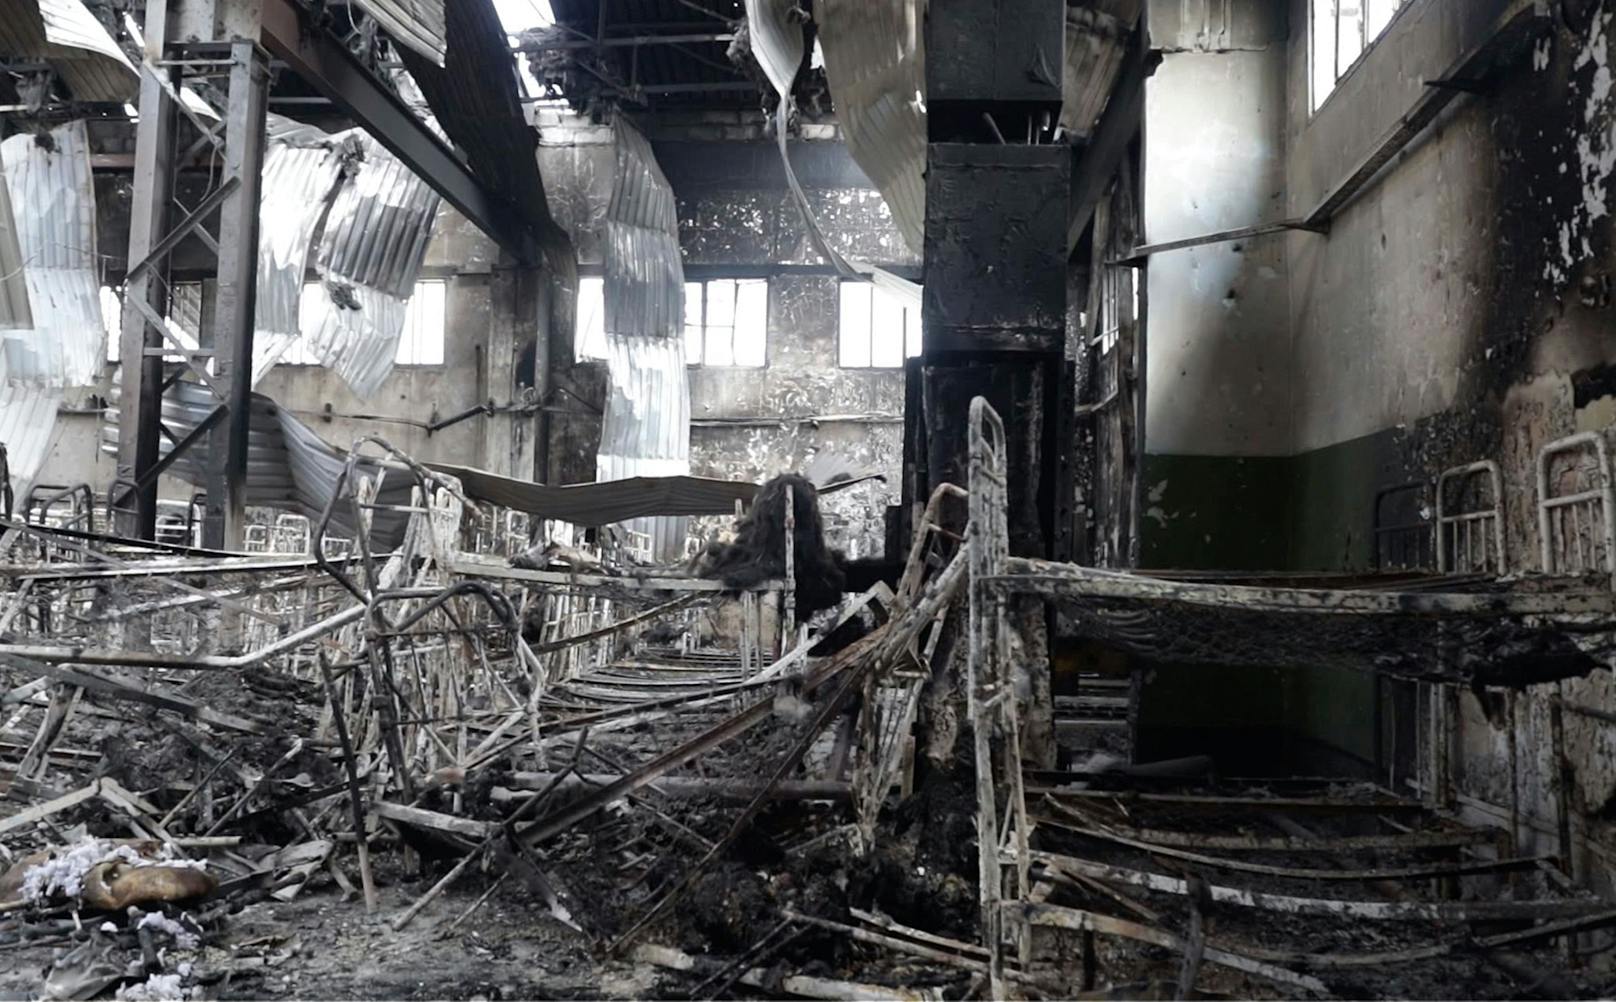 Am 29. Juli wurde das von Russland-freundlichen Separatisten kontrollierte Straflager Oleniwka im Oblast Donezk durch Explosionen und Feuer zerstört.